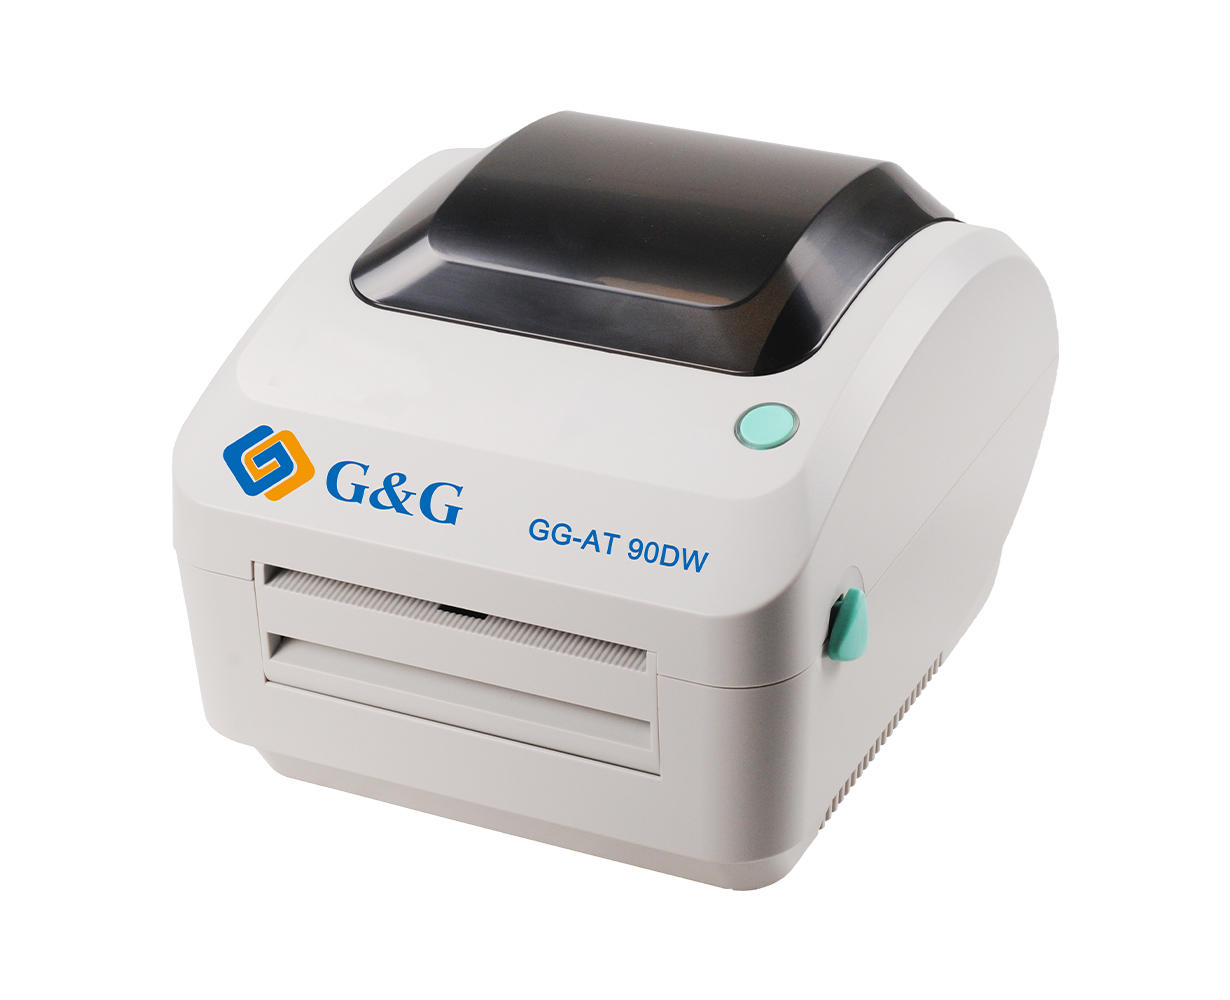 Thermal Label Printer Barcode Desktop Printer Gandg At 90dw Thermal Shipping Label Printer 9240